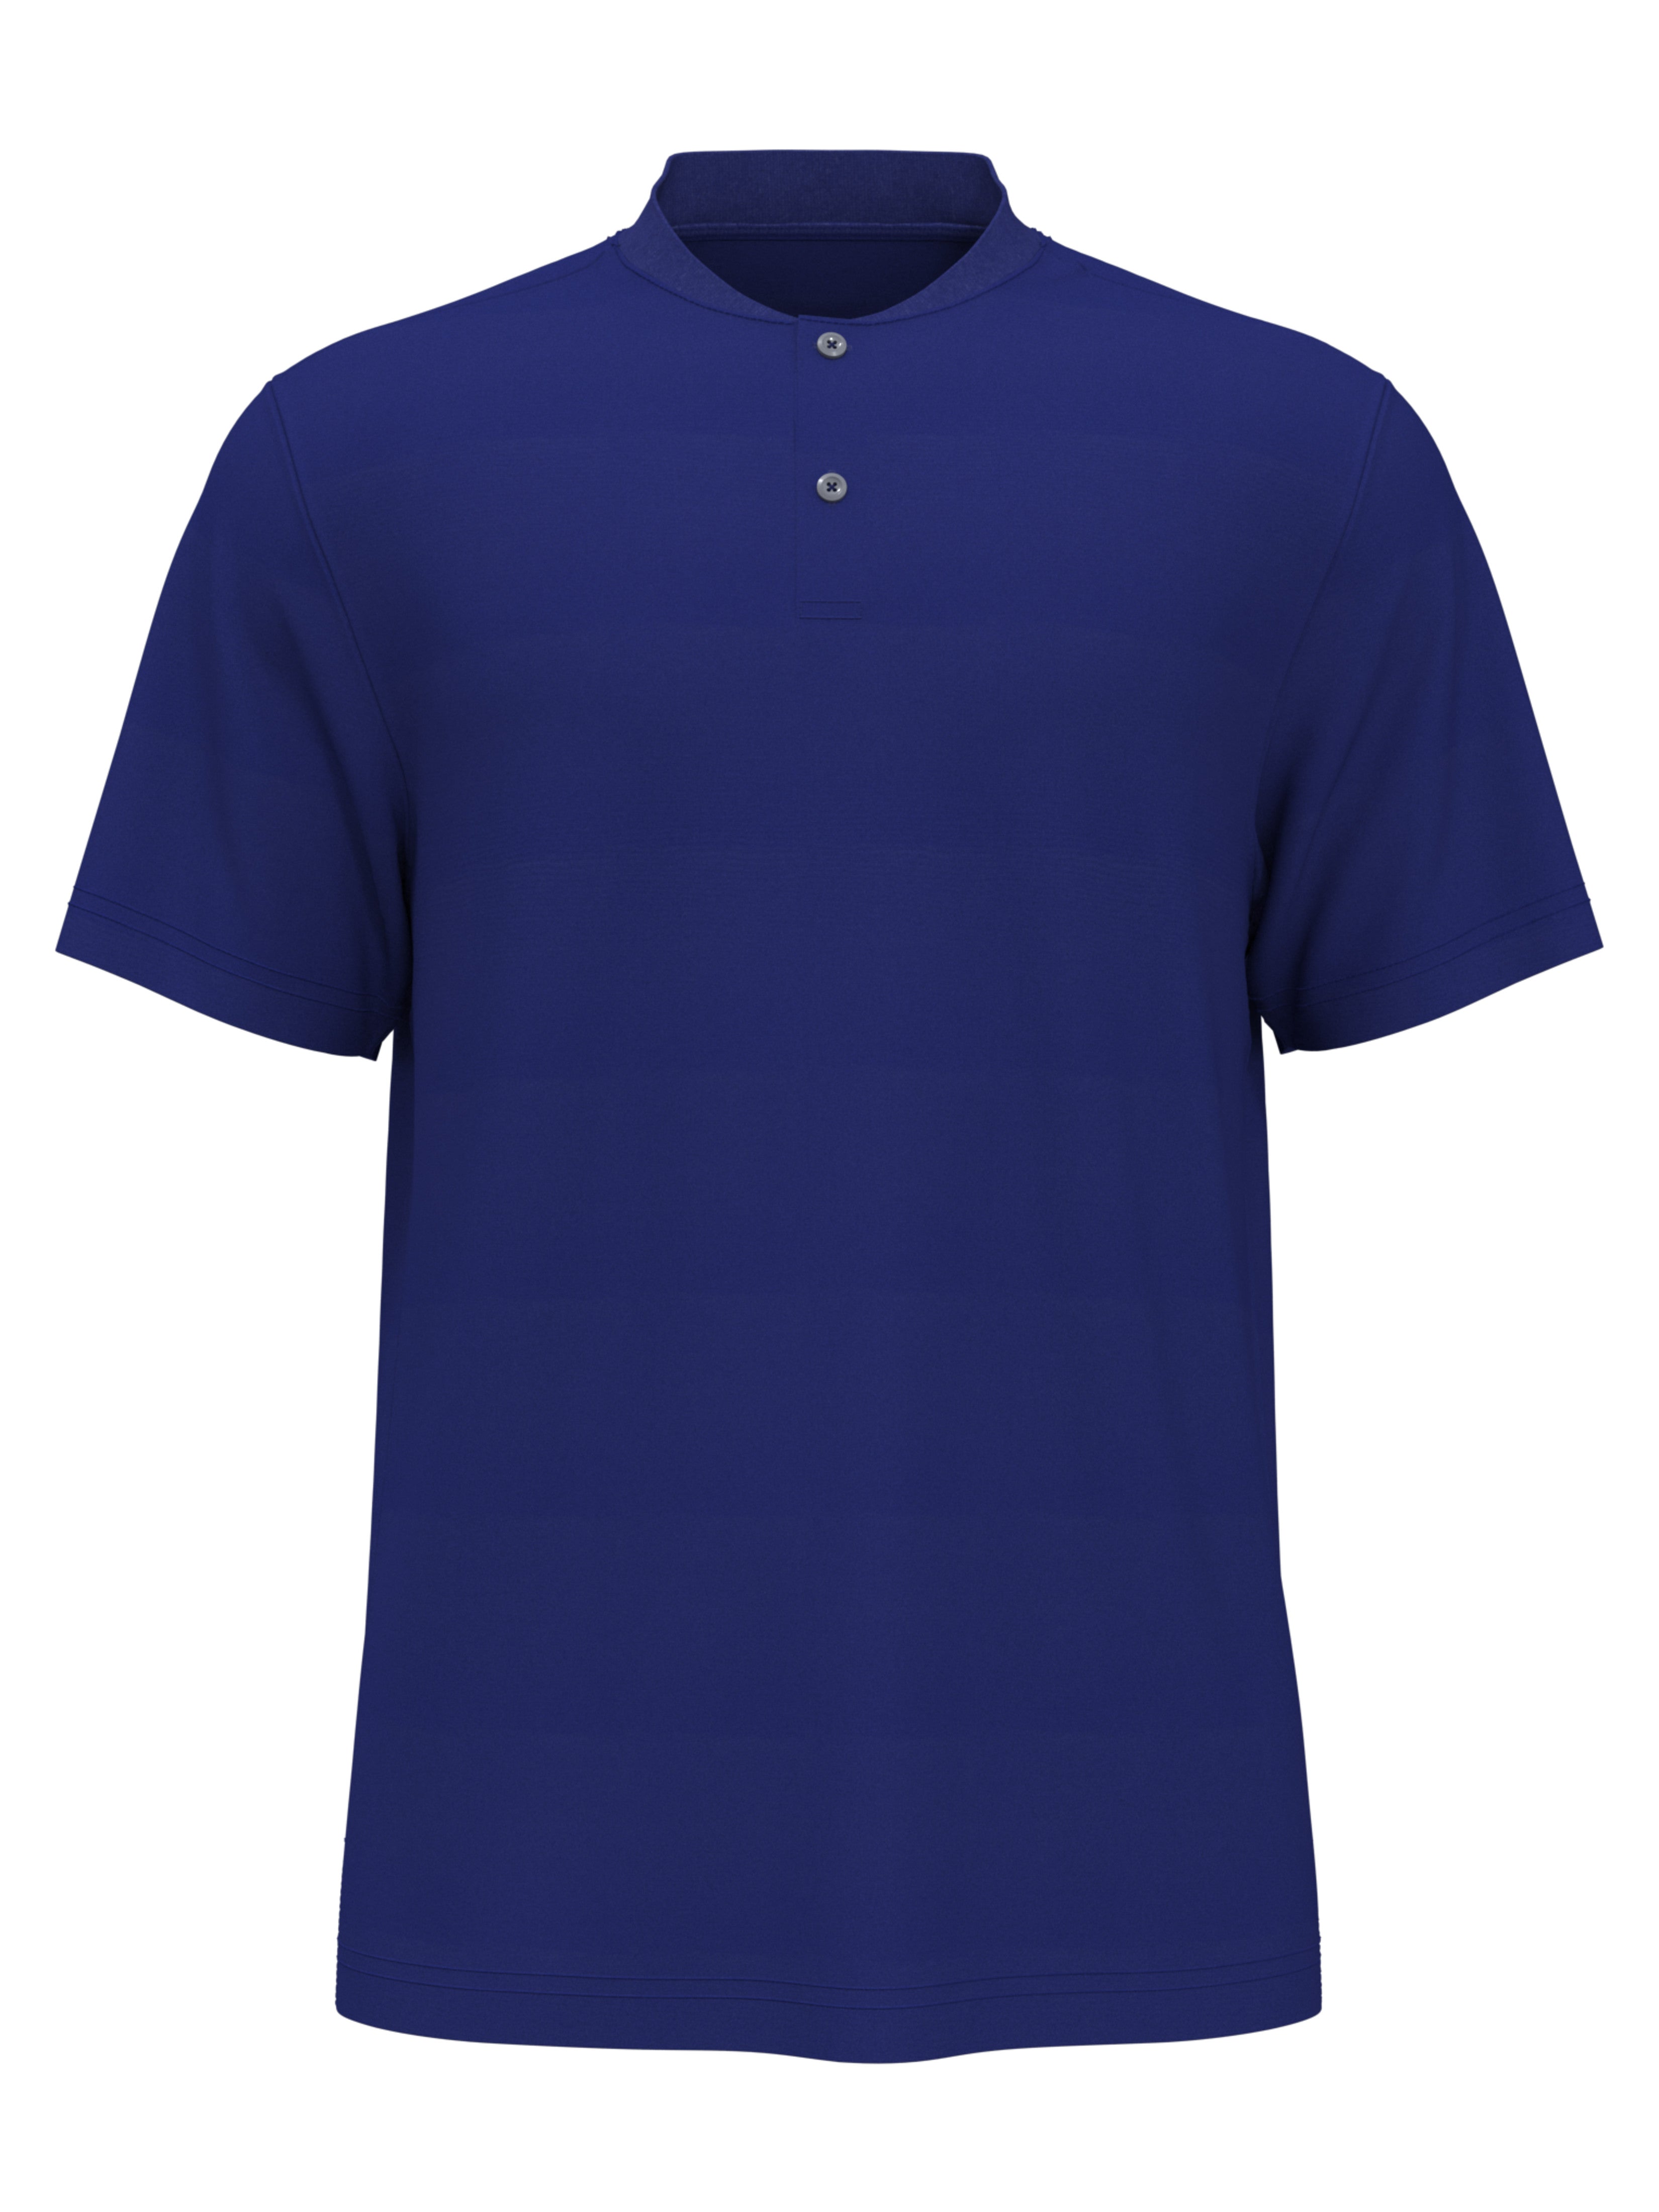 PGA TOUR Apparel Boys Edge Collar Pique Golf Polo Shirt, Size Large, Turkish Sea Blue, 100% Polyester | Golf Apparel Shop